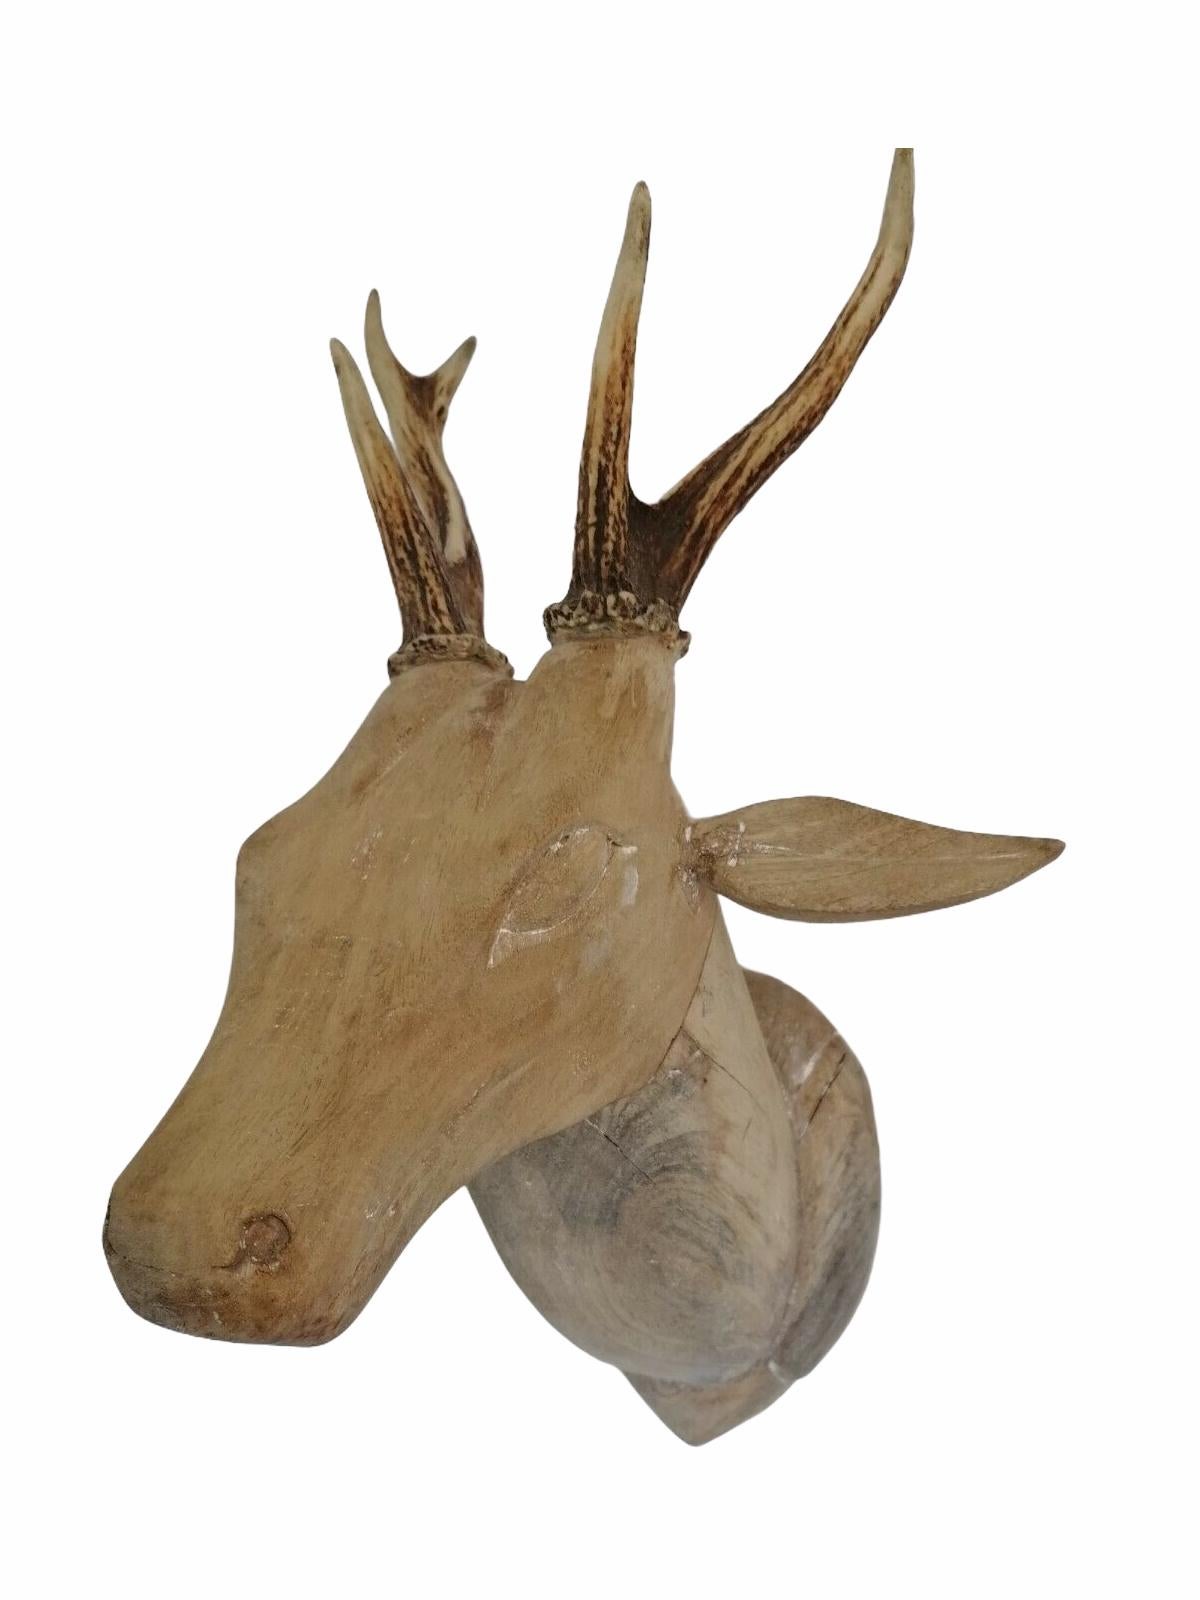 German Large Folk Art Carved Wood Deer Head with Real Antlers, 19th Century